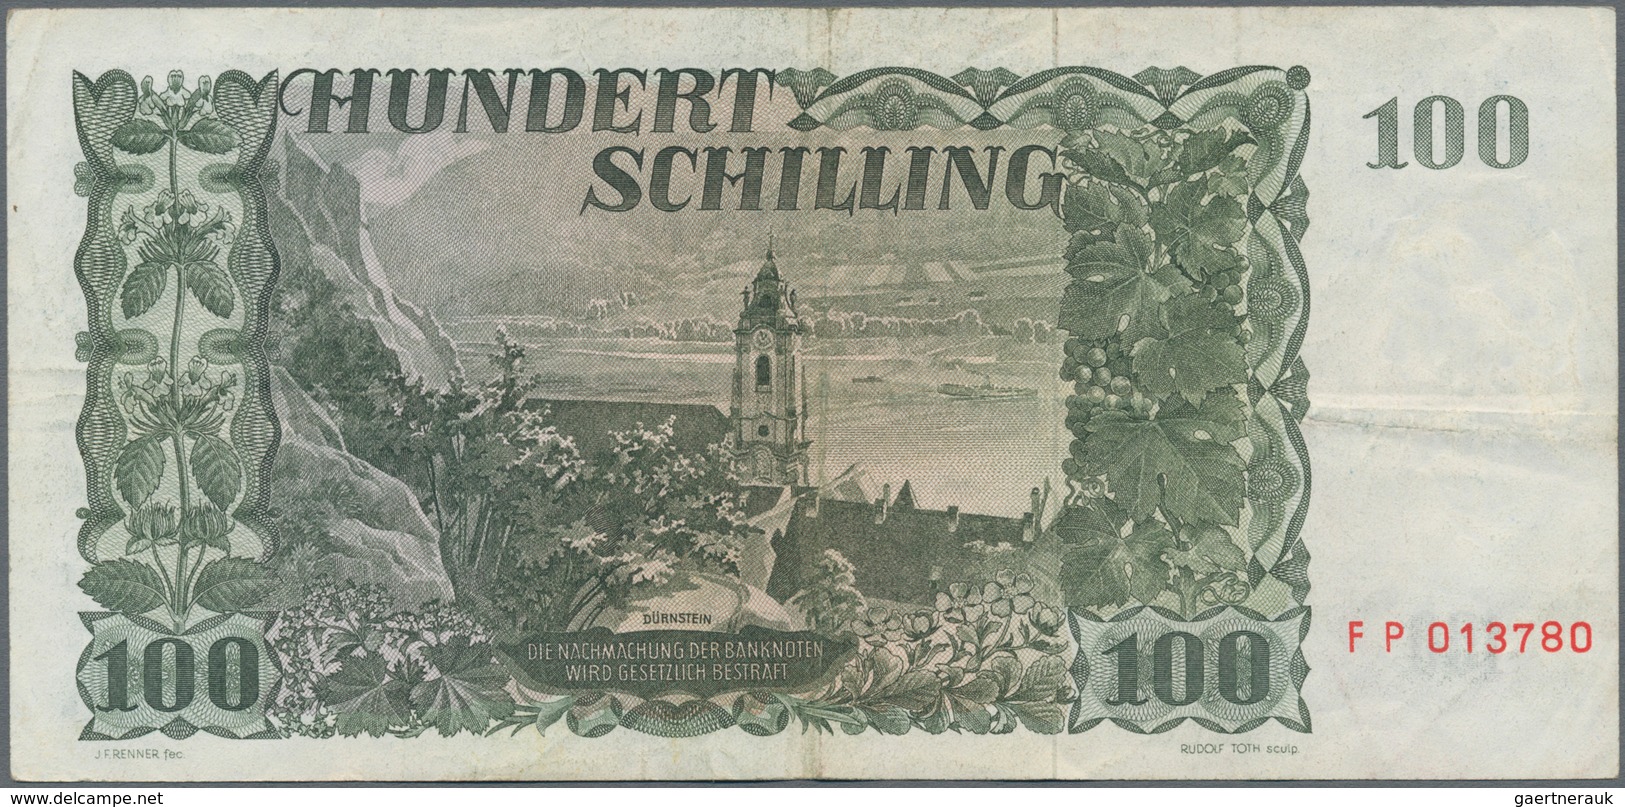 Austria / Österreich: Very nice set with 8 banknotes comprising 10 Schilling 1950 P.128 (F-), 50 Sch